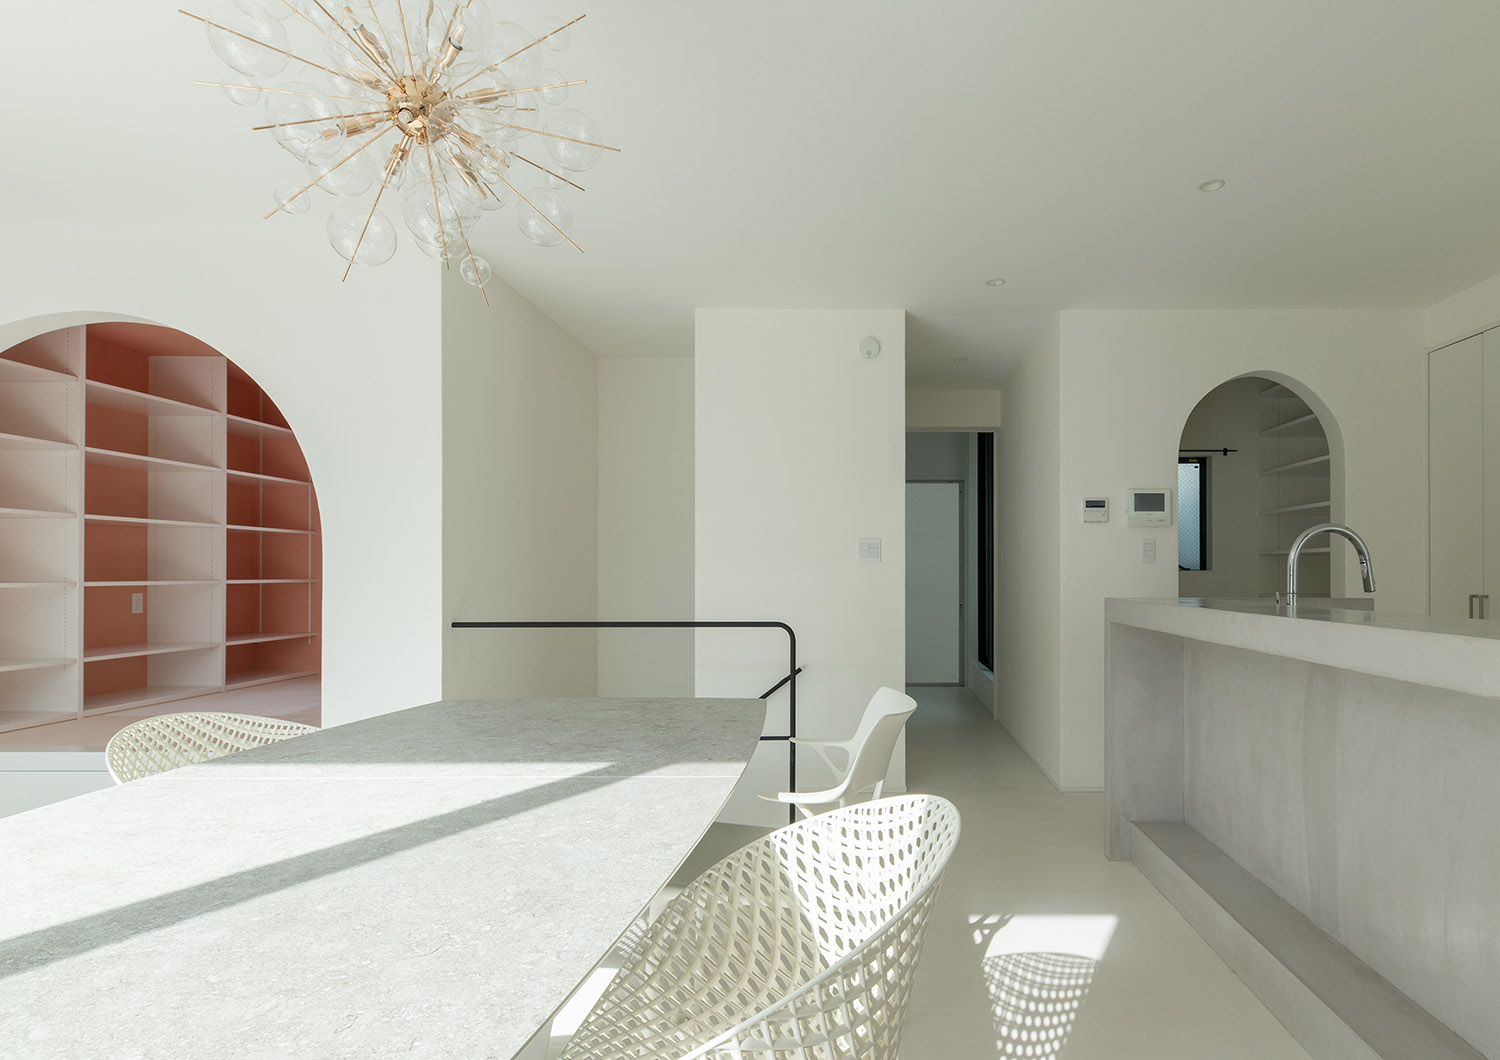 グレーのカウンターキッチンとダイニングテーブルがある白を基調としたLDK・デザイン住宅